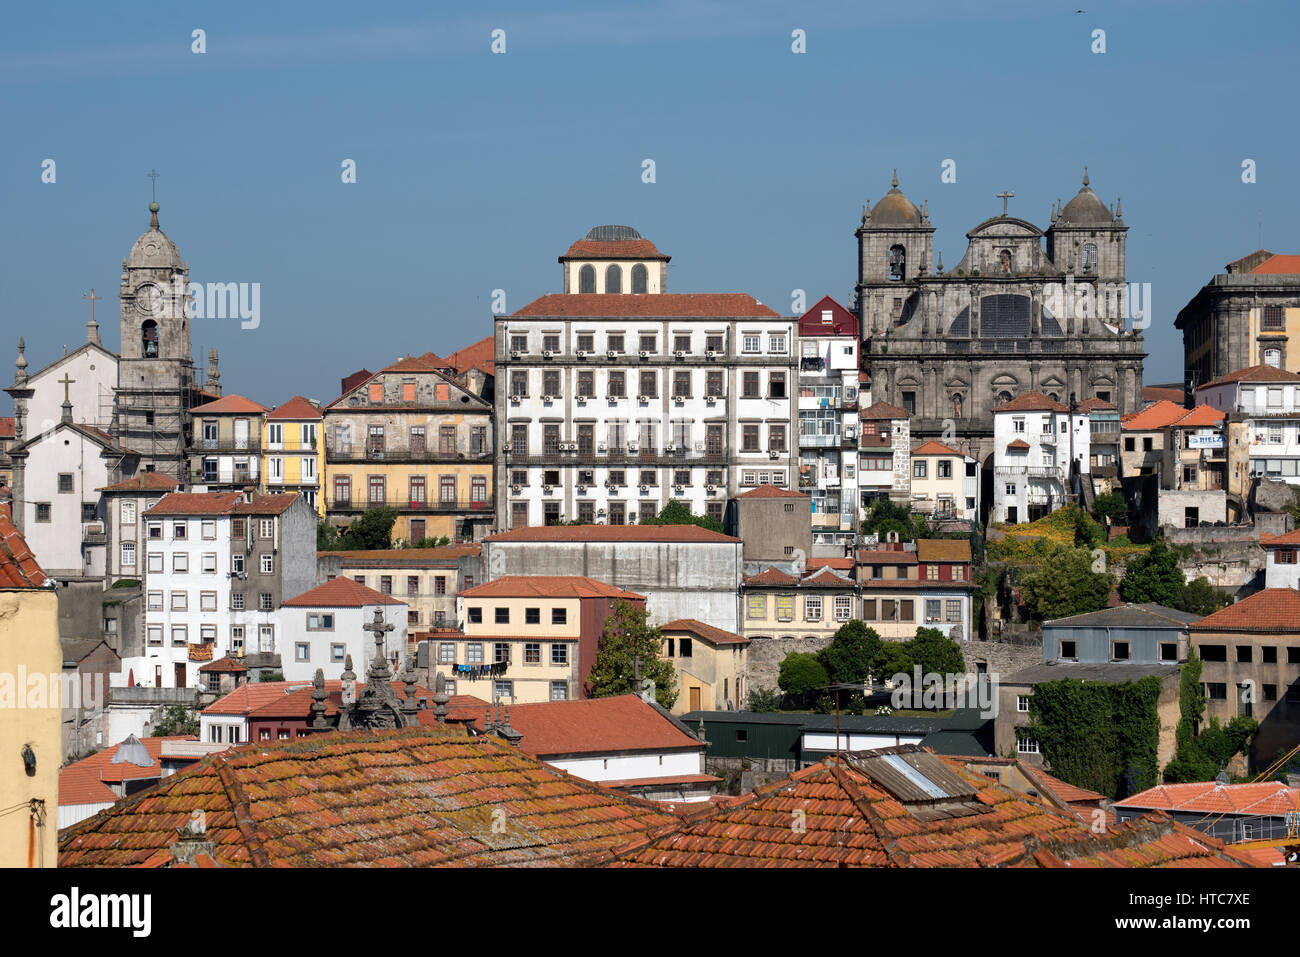 Vue aérienne de la rivière Douro et Porto Portugal Banque D'Images